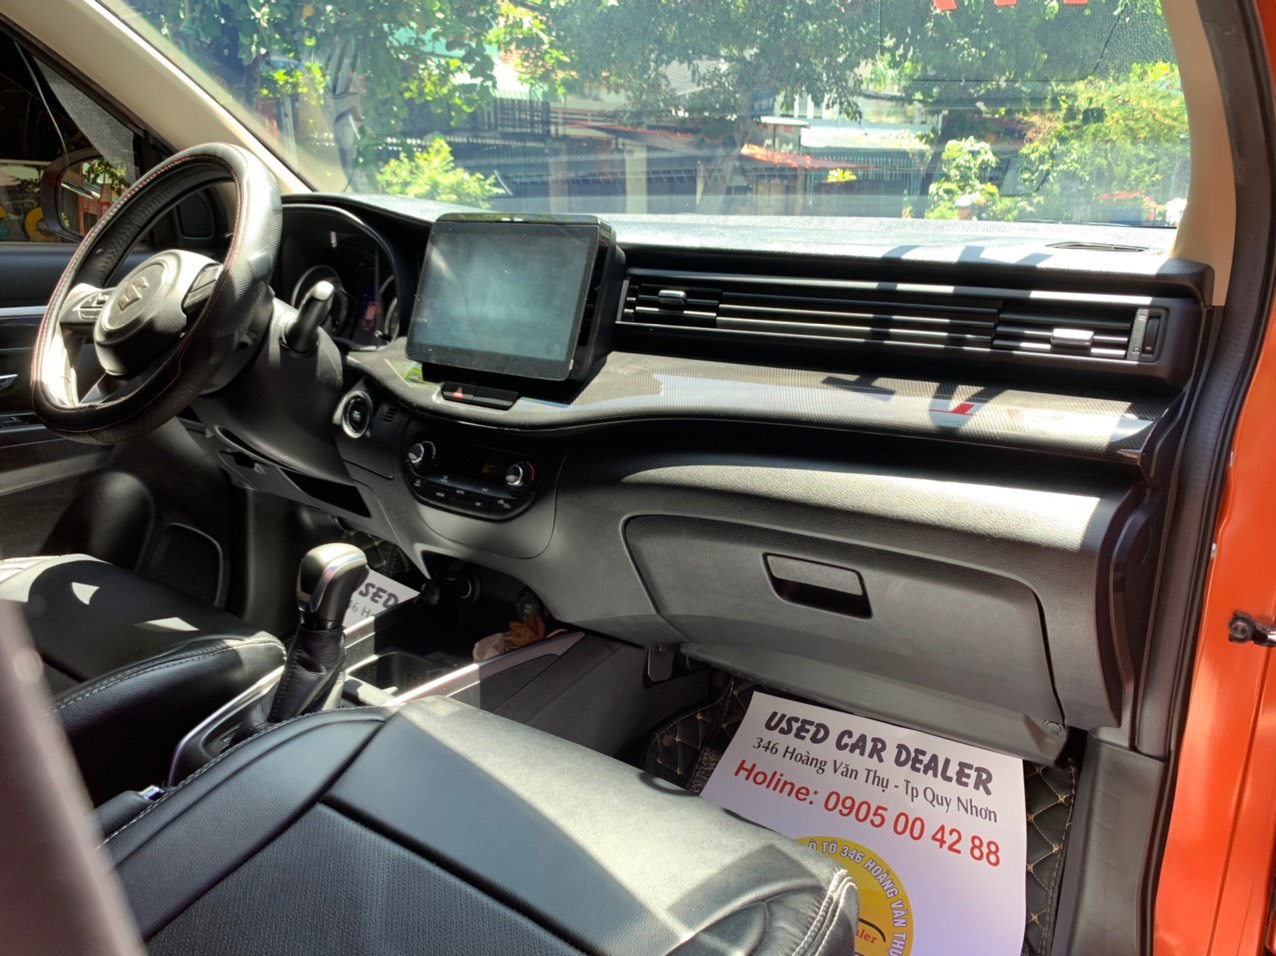 Suzuki XL 7 2020 -  Used Car Dealer Trimap đang bán;  Suzuki XL7 1.5AT sx 2020 đã sử dụng